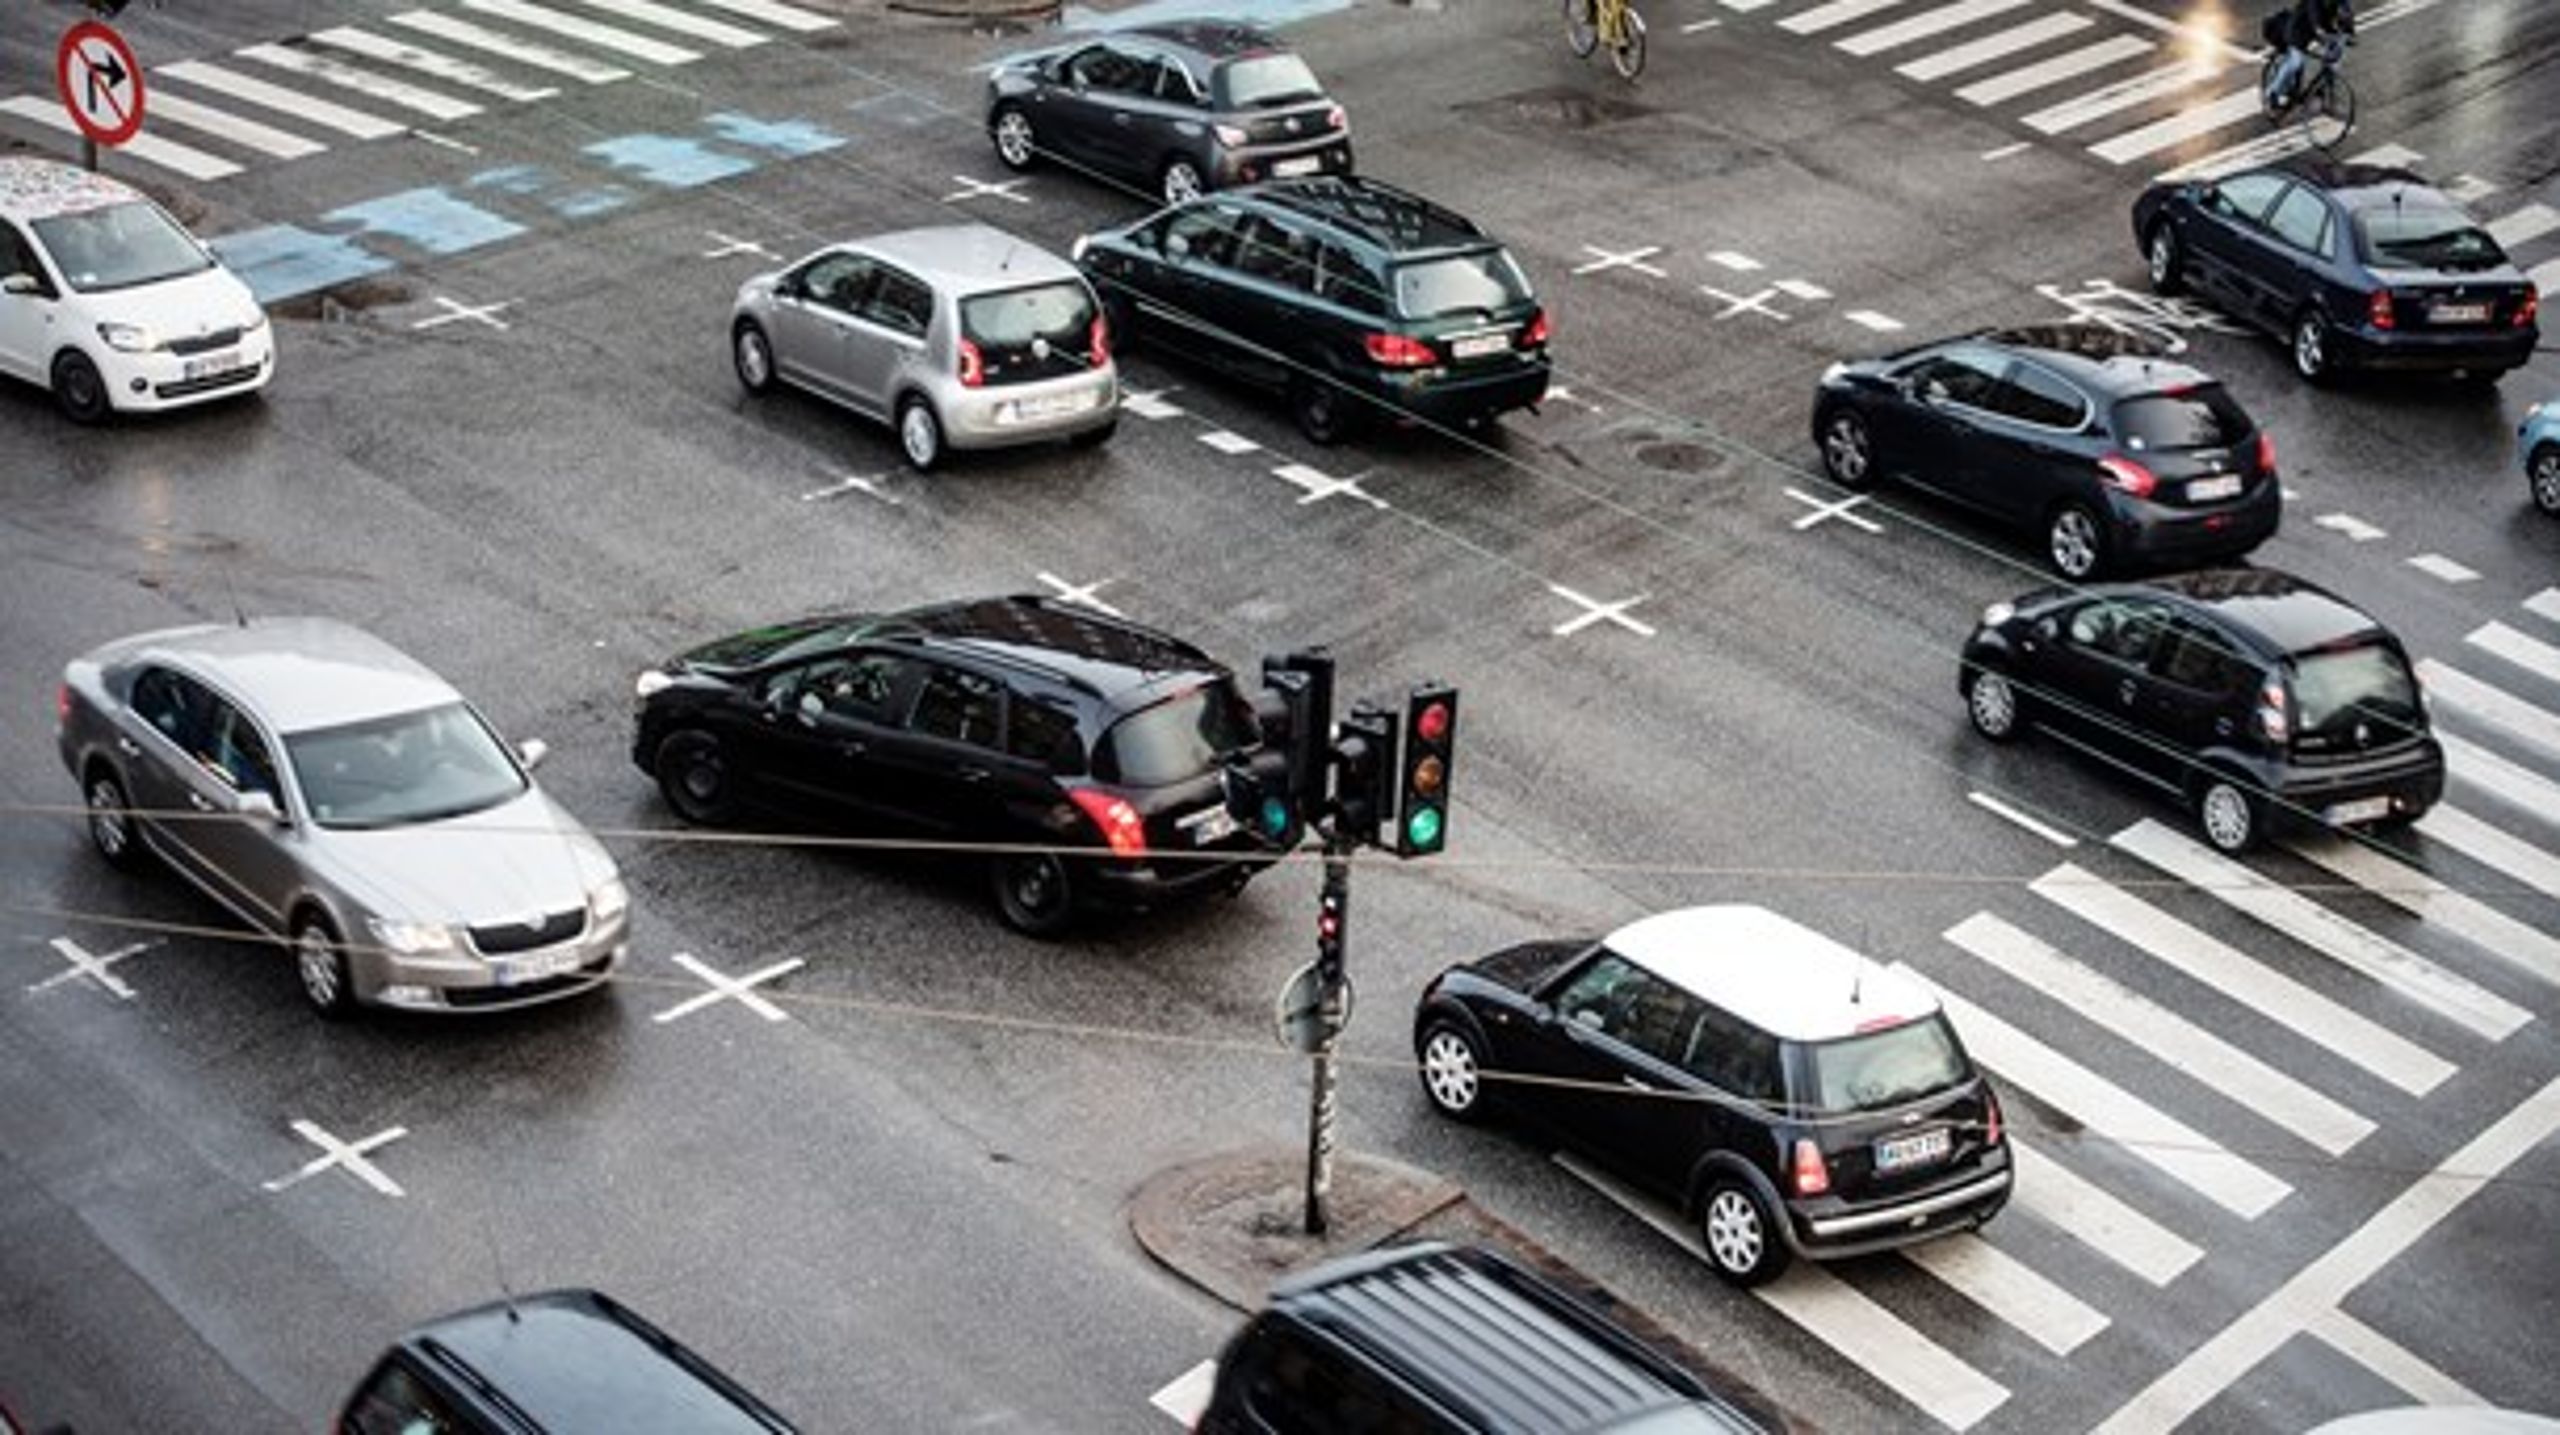 Rådet for Sikker Trafik køber ikke præmissen om, at flere biler betyder flere ulykker.